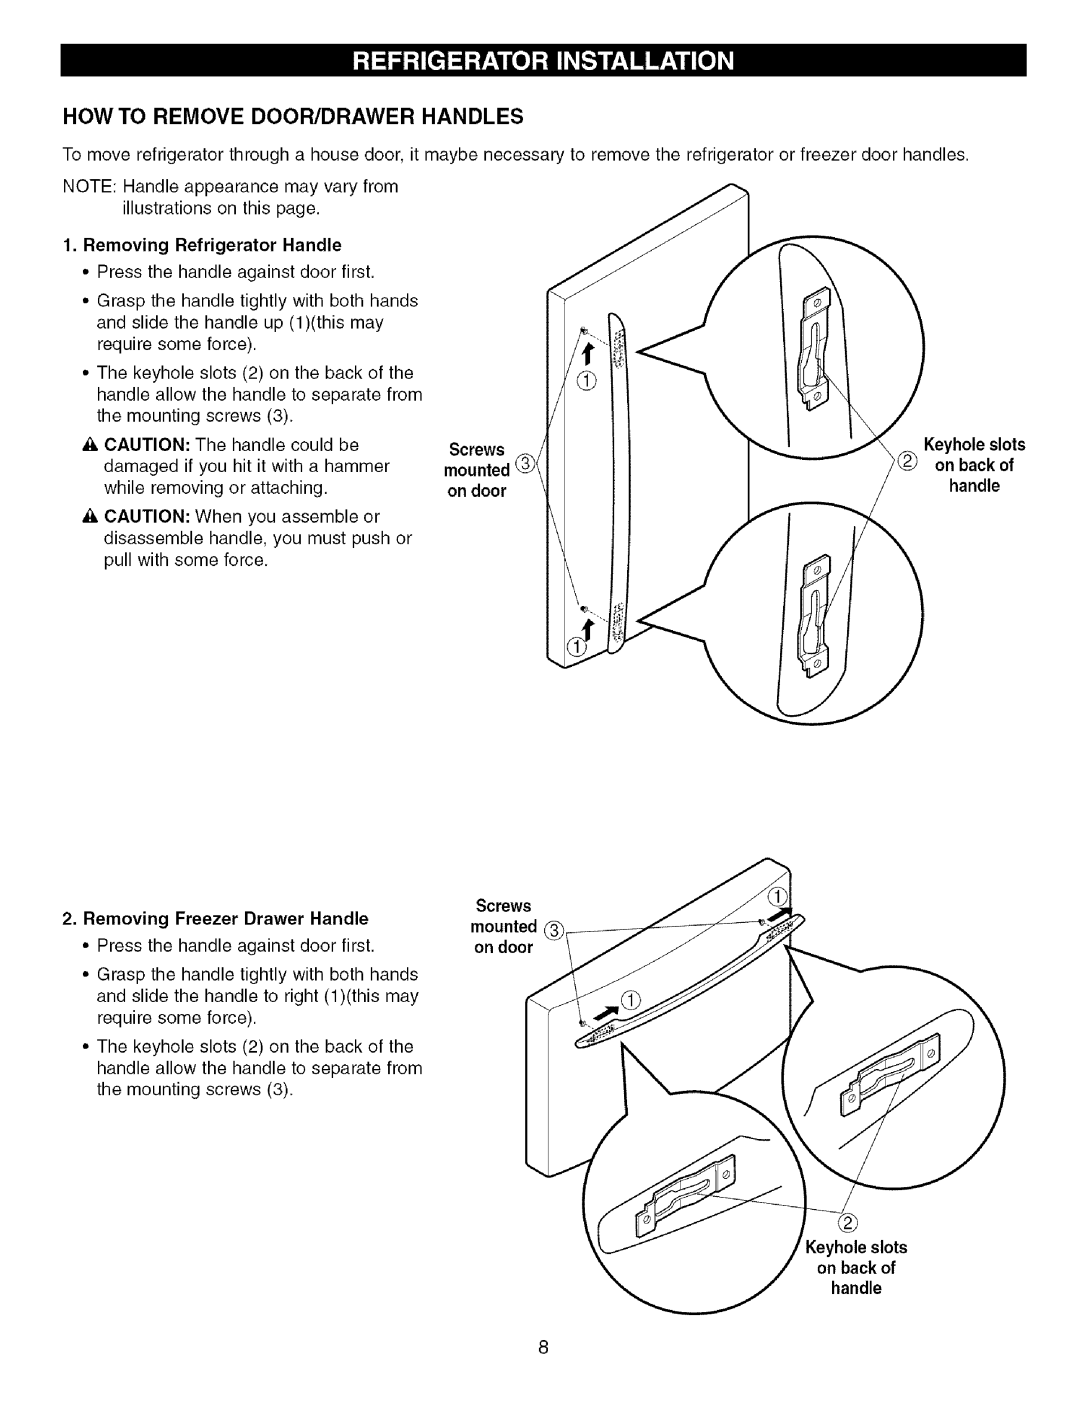 Kenmore 795.755534 How To Remove Door/Drawer Handles, Removing Refrigerator Handle, mounted on door, mounted @I on door 